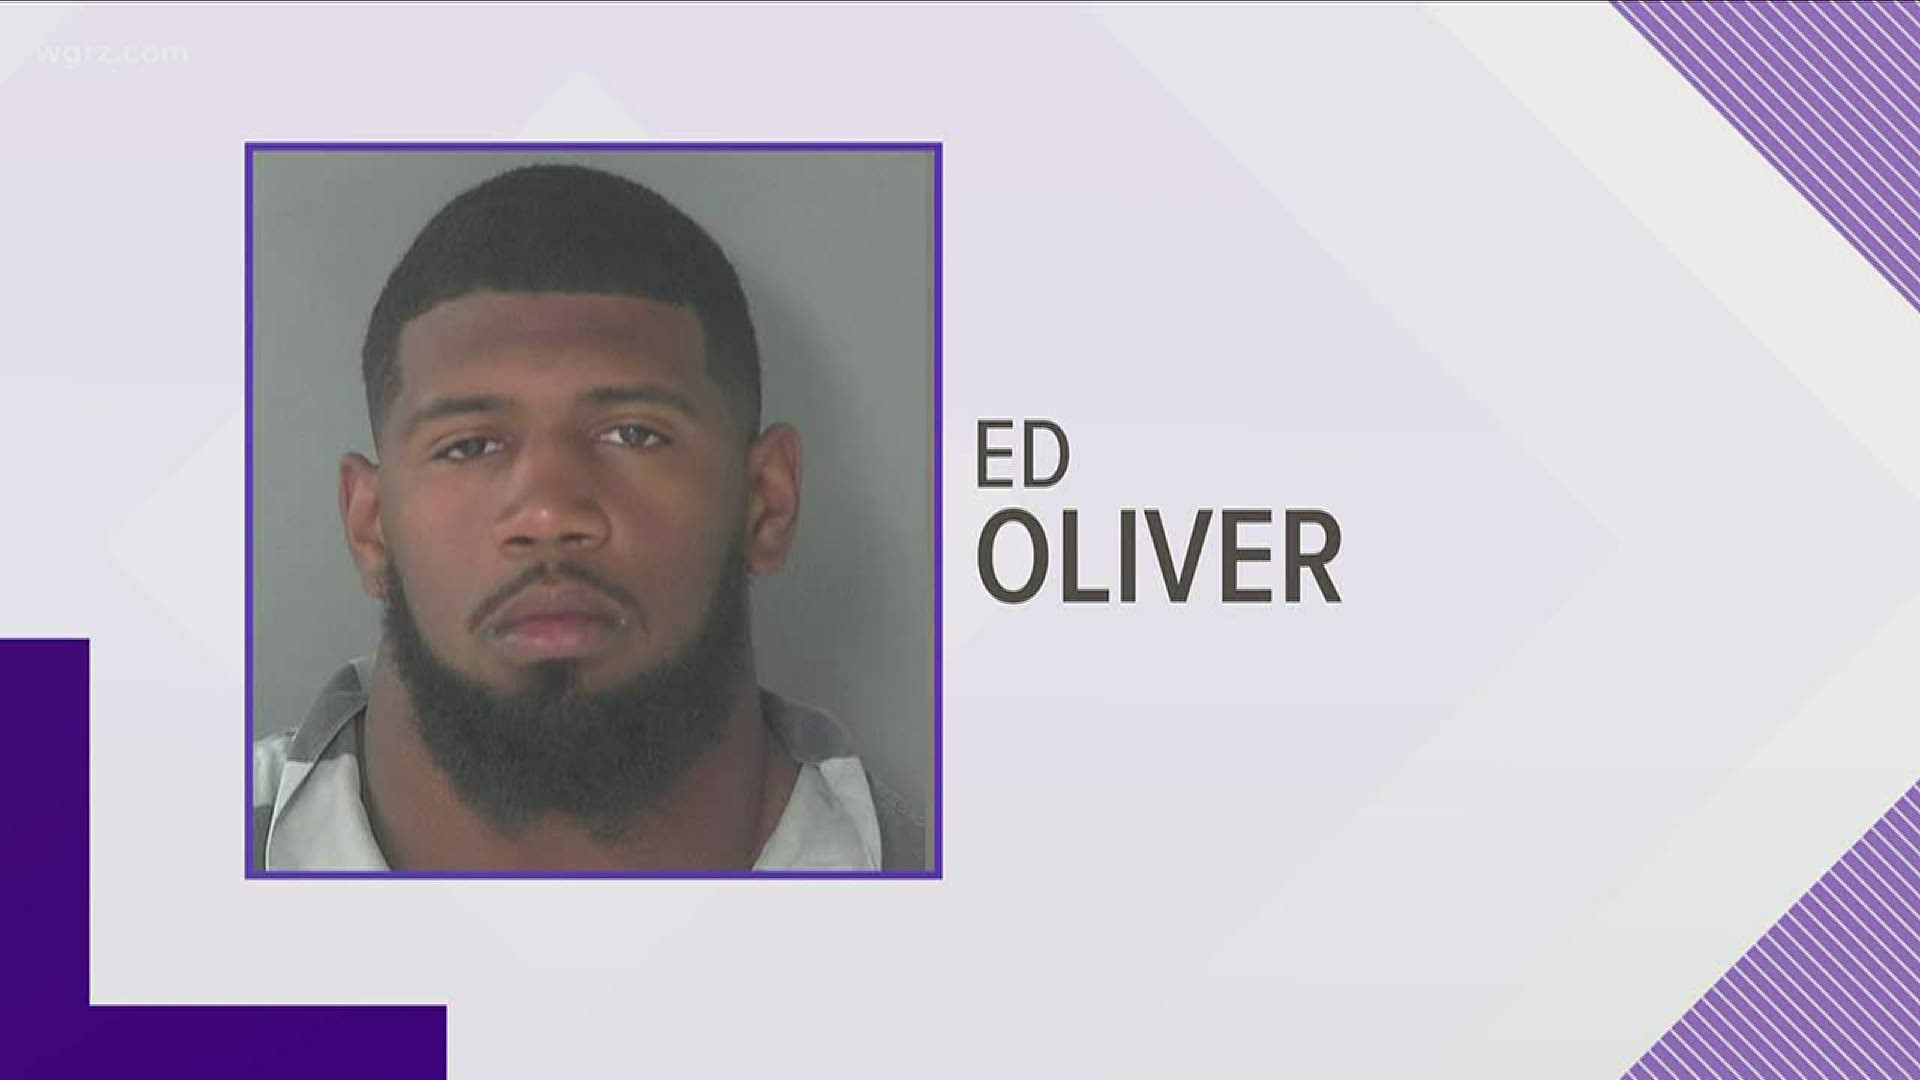 Bills DT Oliver arrested near Houston